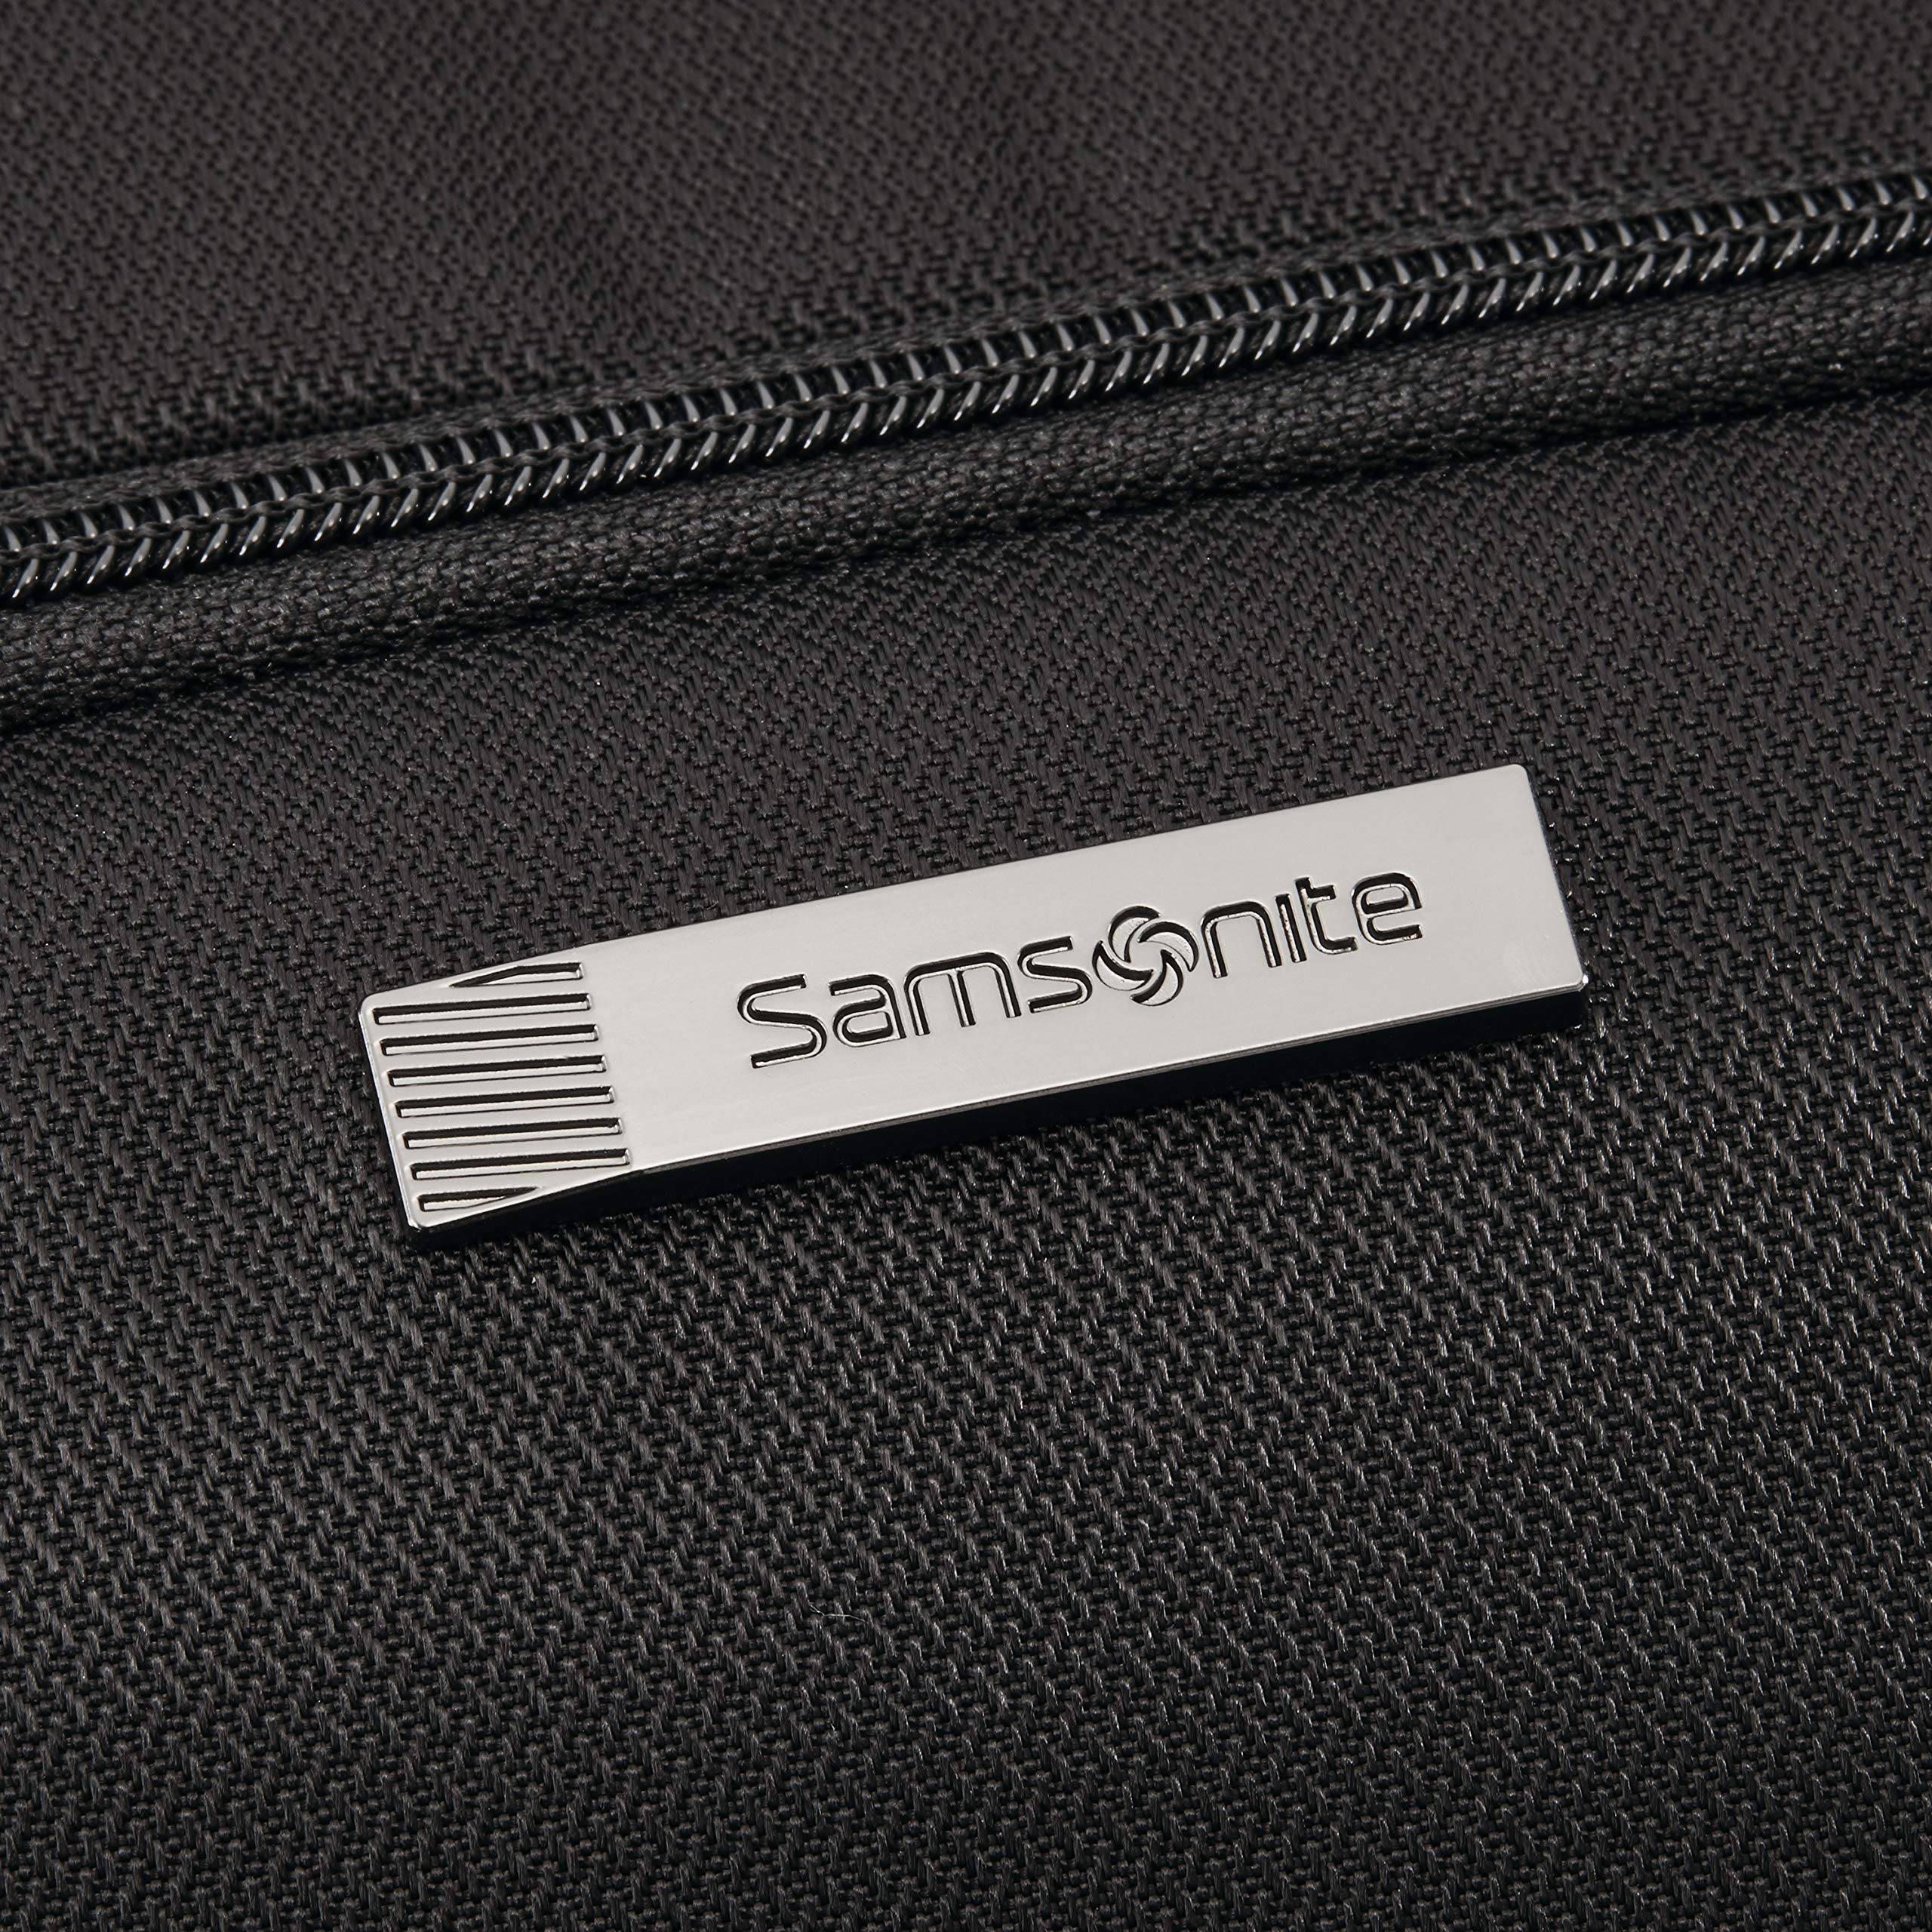 Samsonite Tectonic Sweetwater Backpack – Luggage Online